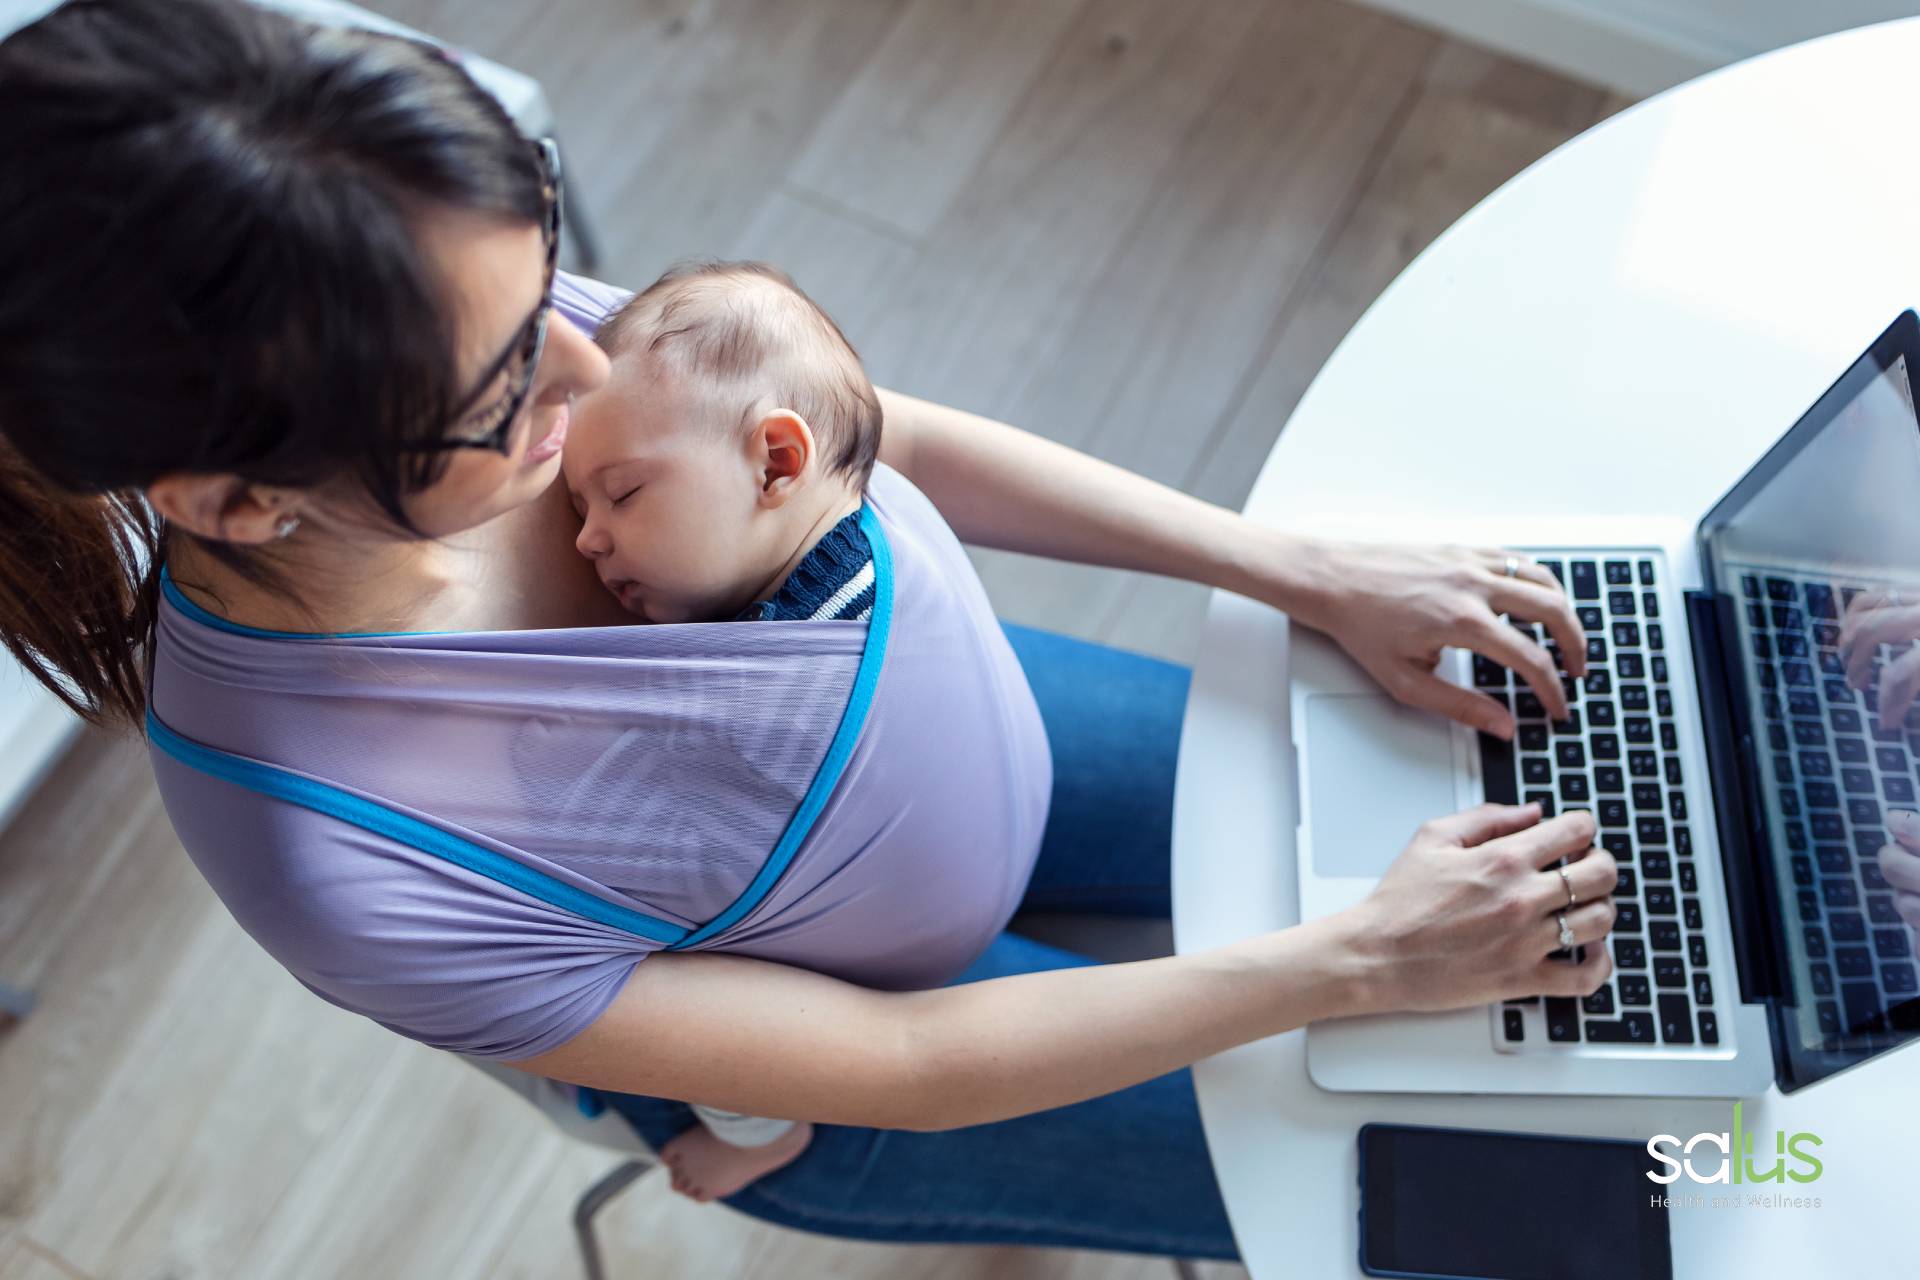 Mamme e lavoro: i consigli per conciliare la famiglia con il lavoro